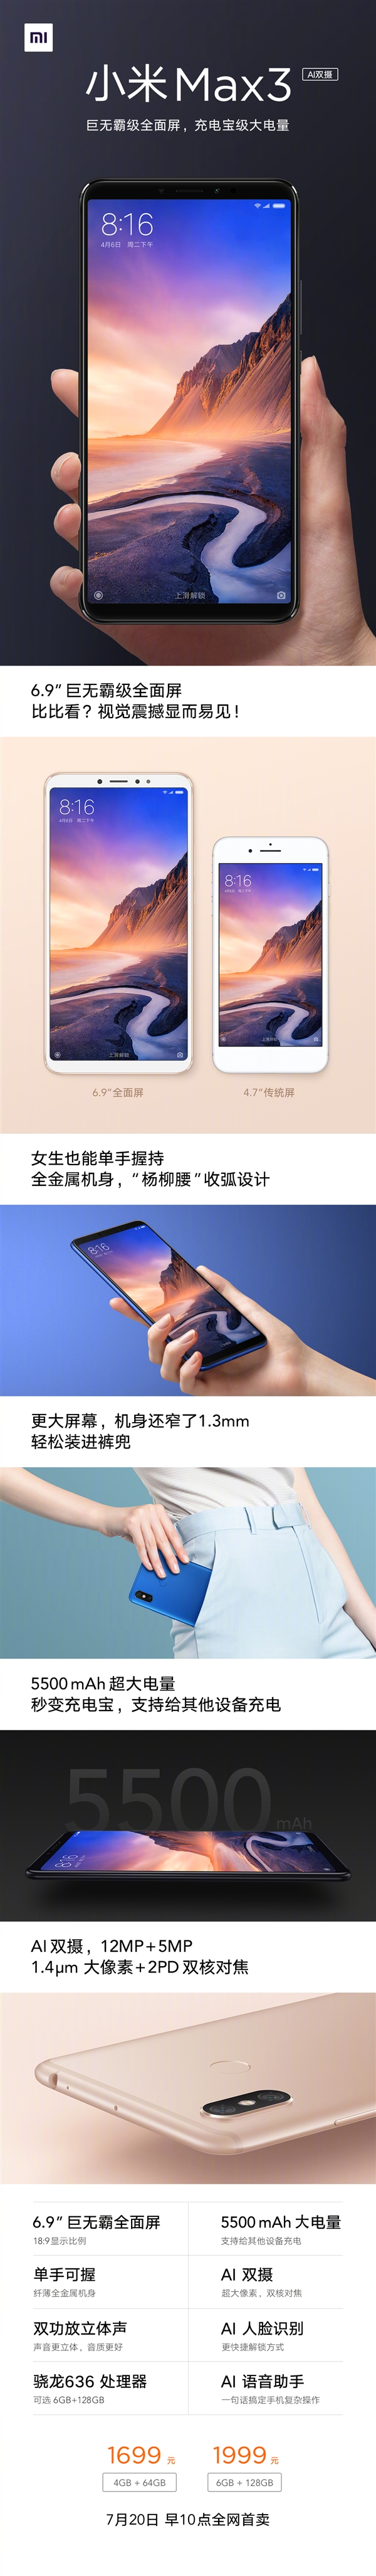 Анонс Xiaomi Mi Max 3: еще больше экрана, камер и миллиампер в батарейке